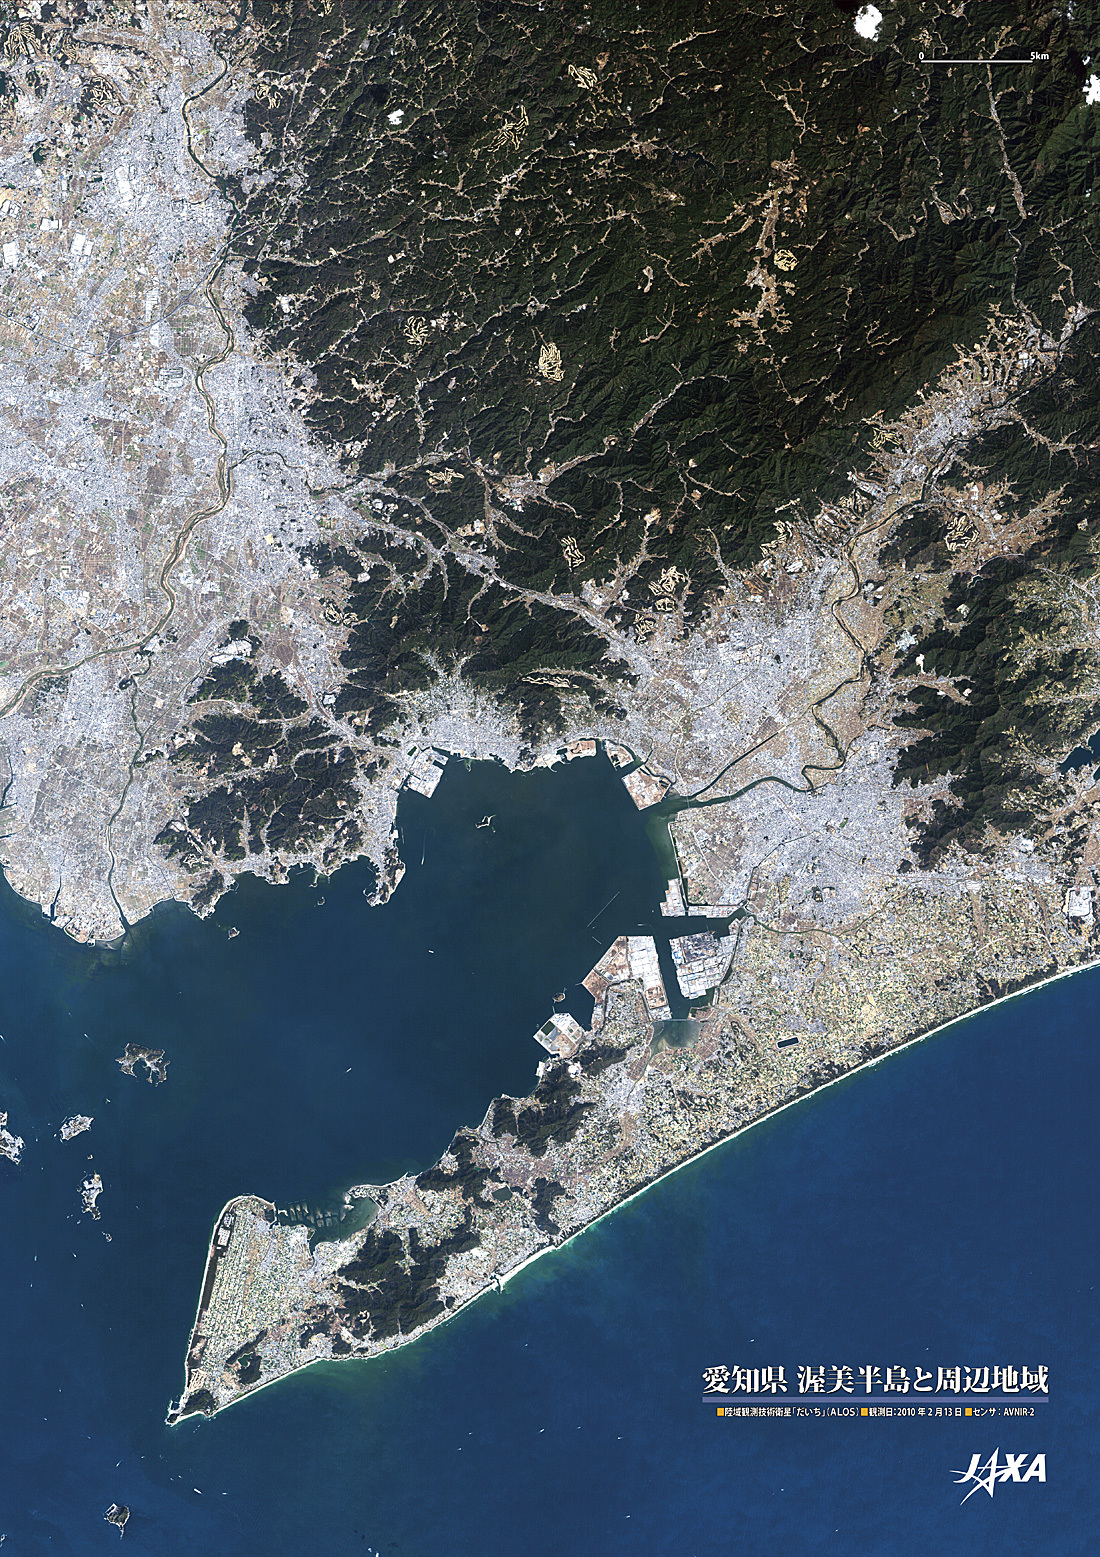 だいちから見た日本の都市 渥美半島と周辺地域:衛星画像（ポスター仕上げ）